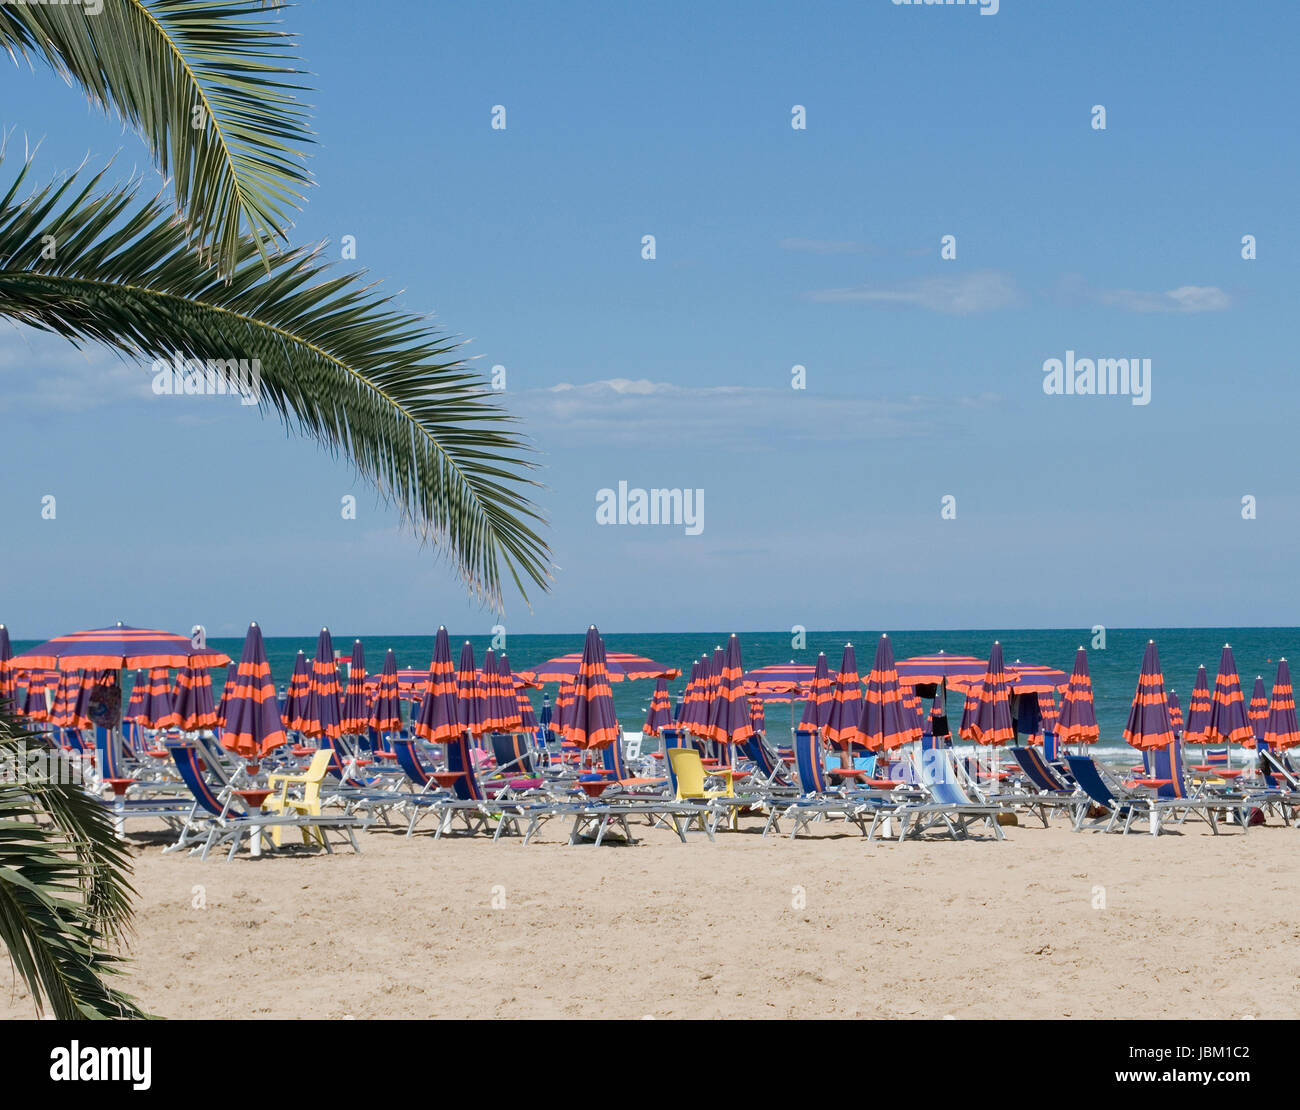 Beach in San Benedetto del Tronto, Marche, Italy Stock Photo - Alamy